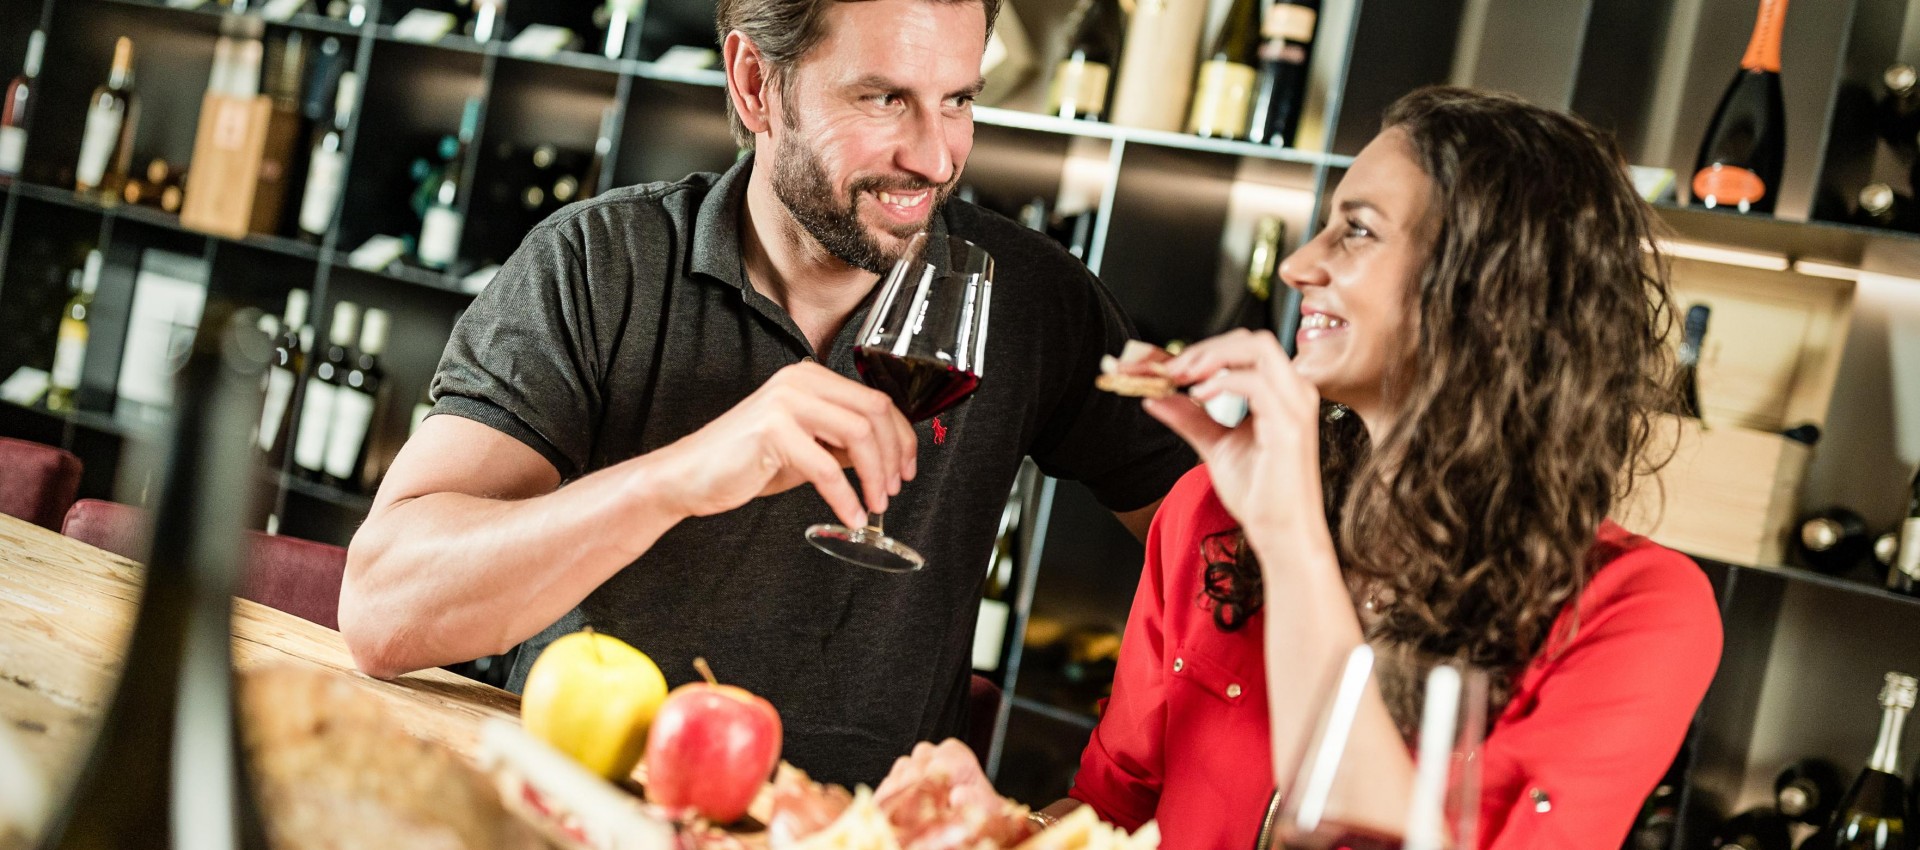 Gourmet Weinverkostung mit kulinarischen Köstlichkeiten im Weinhotel Südtirol, Pfeiss Lana bei Meran